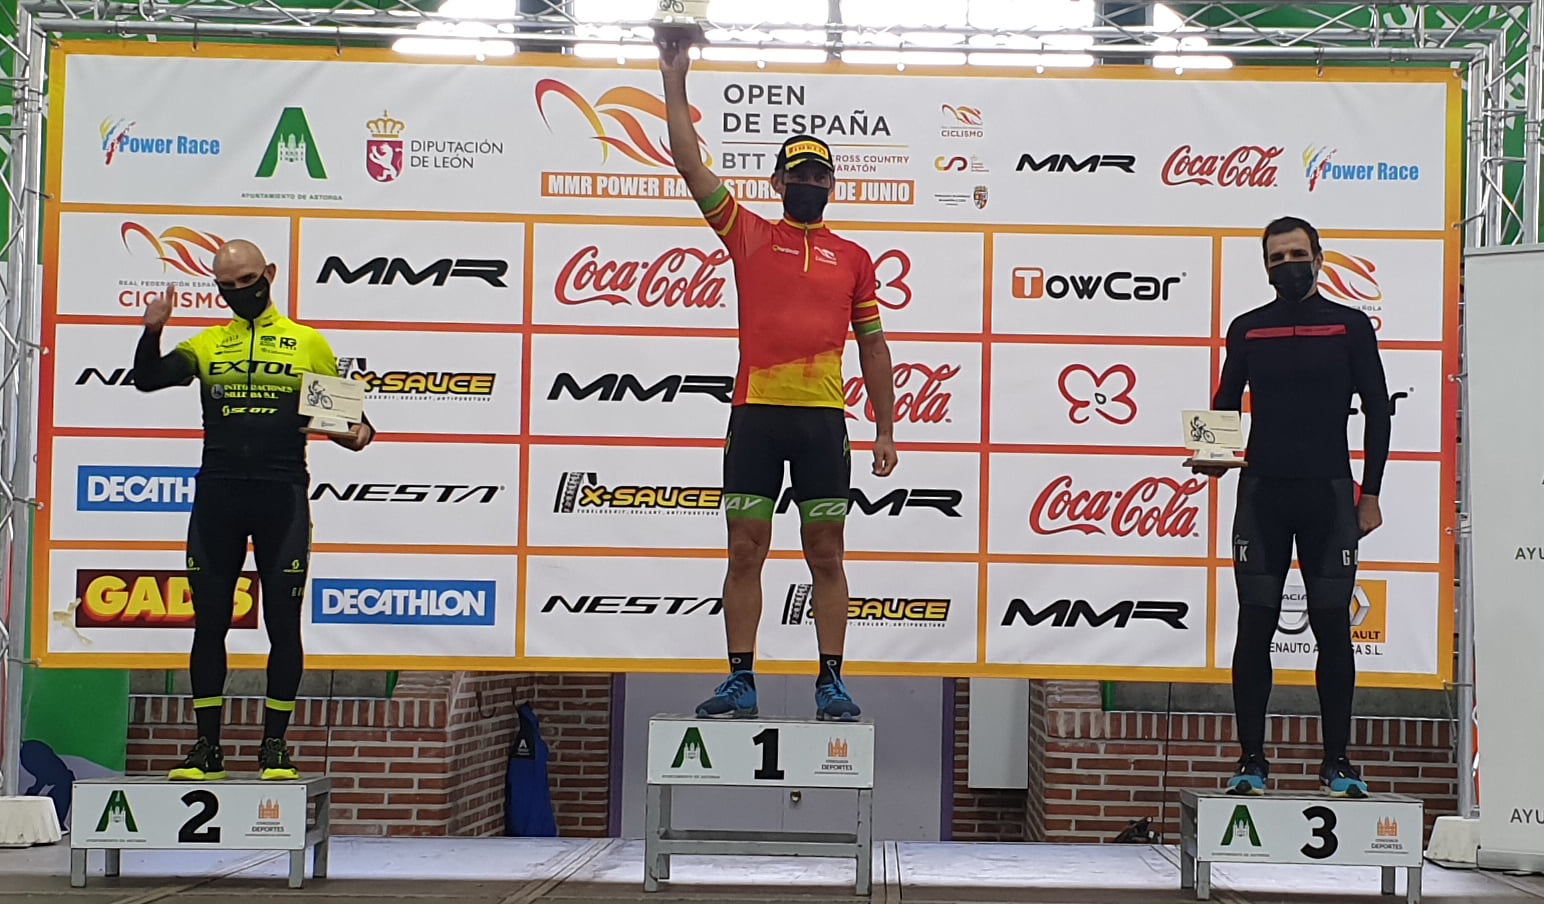 Open de España BTT Maratón: Oito podios galegos, cinco deles do Extol, na Power Race Astorga